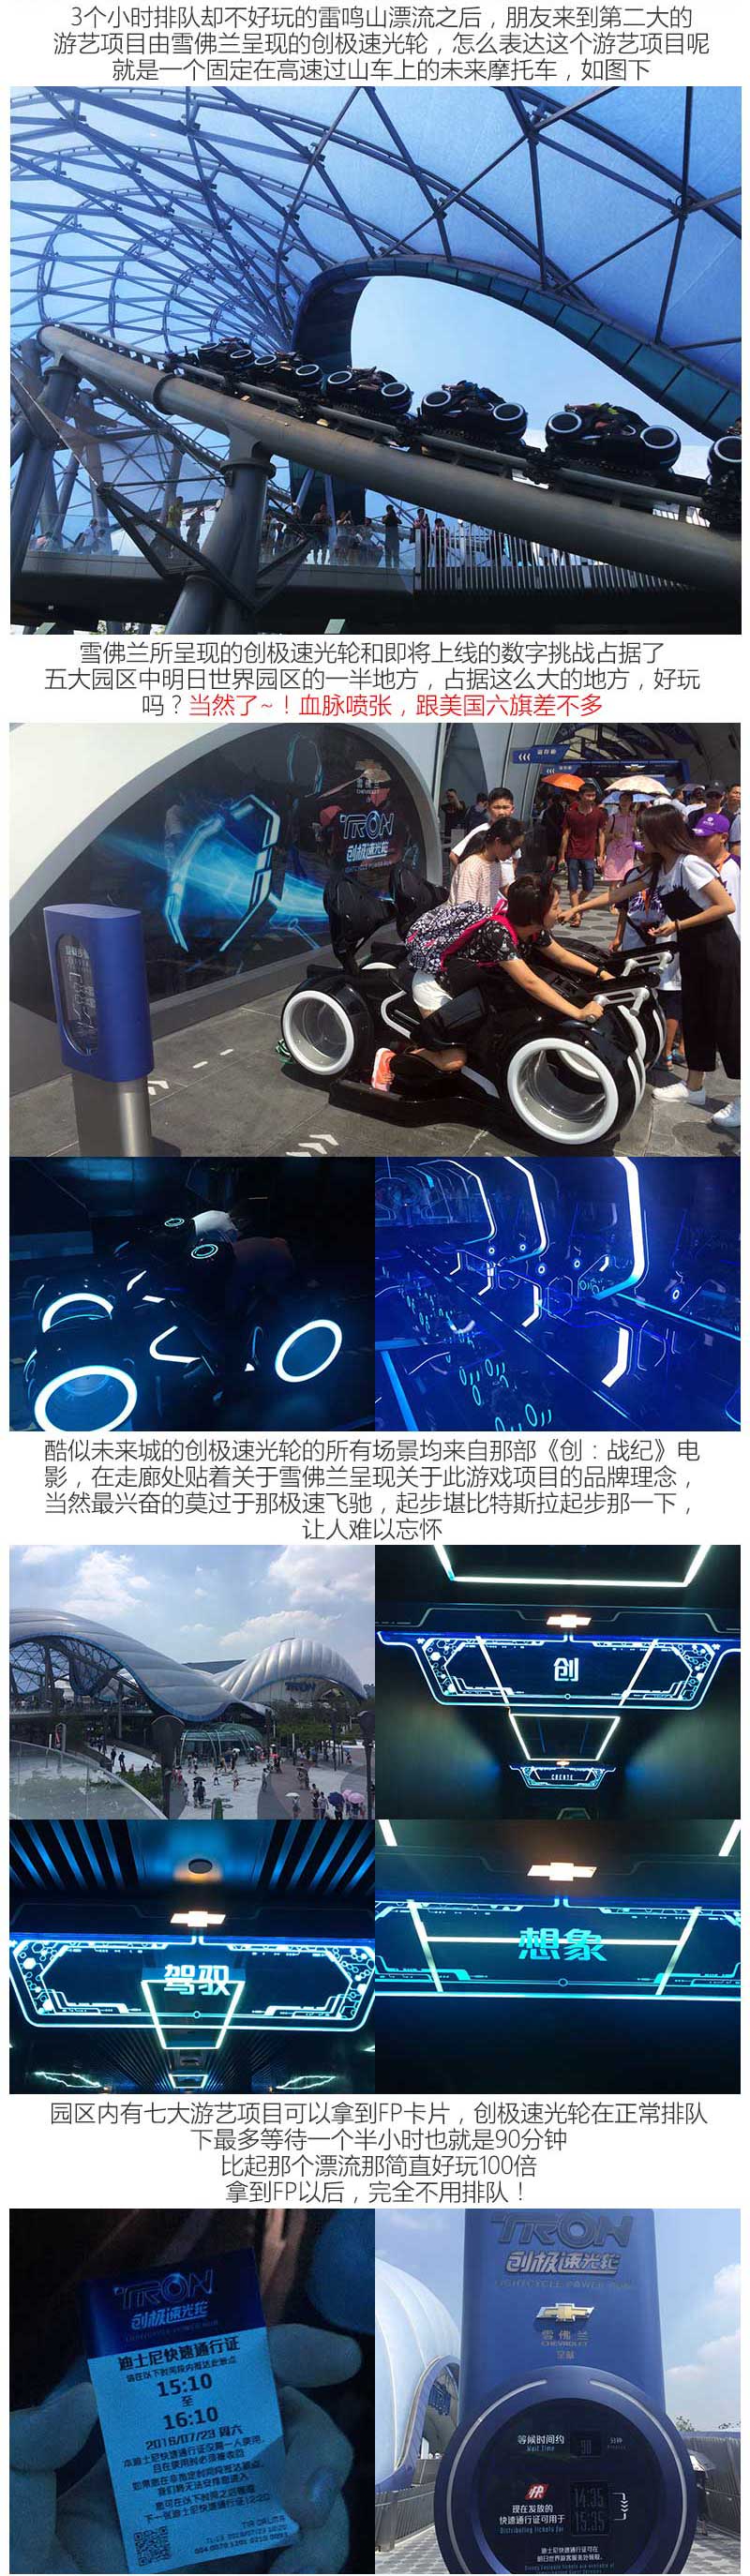 上海迪士尼最好玩的 是那车企赞助的项目-图3